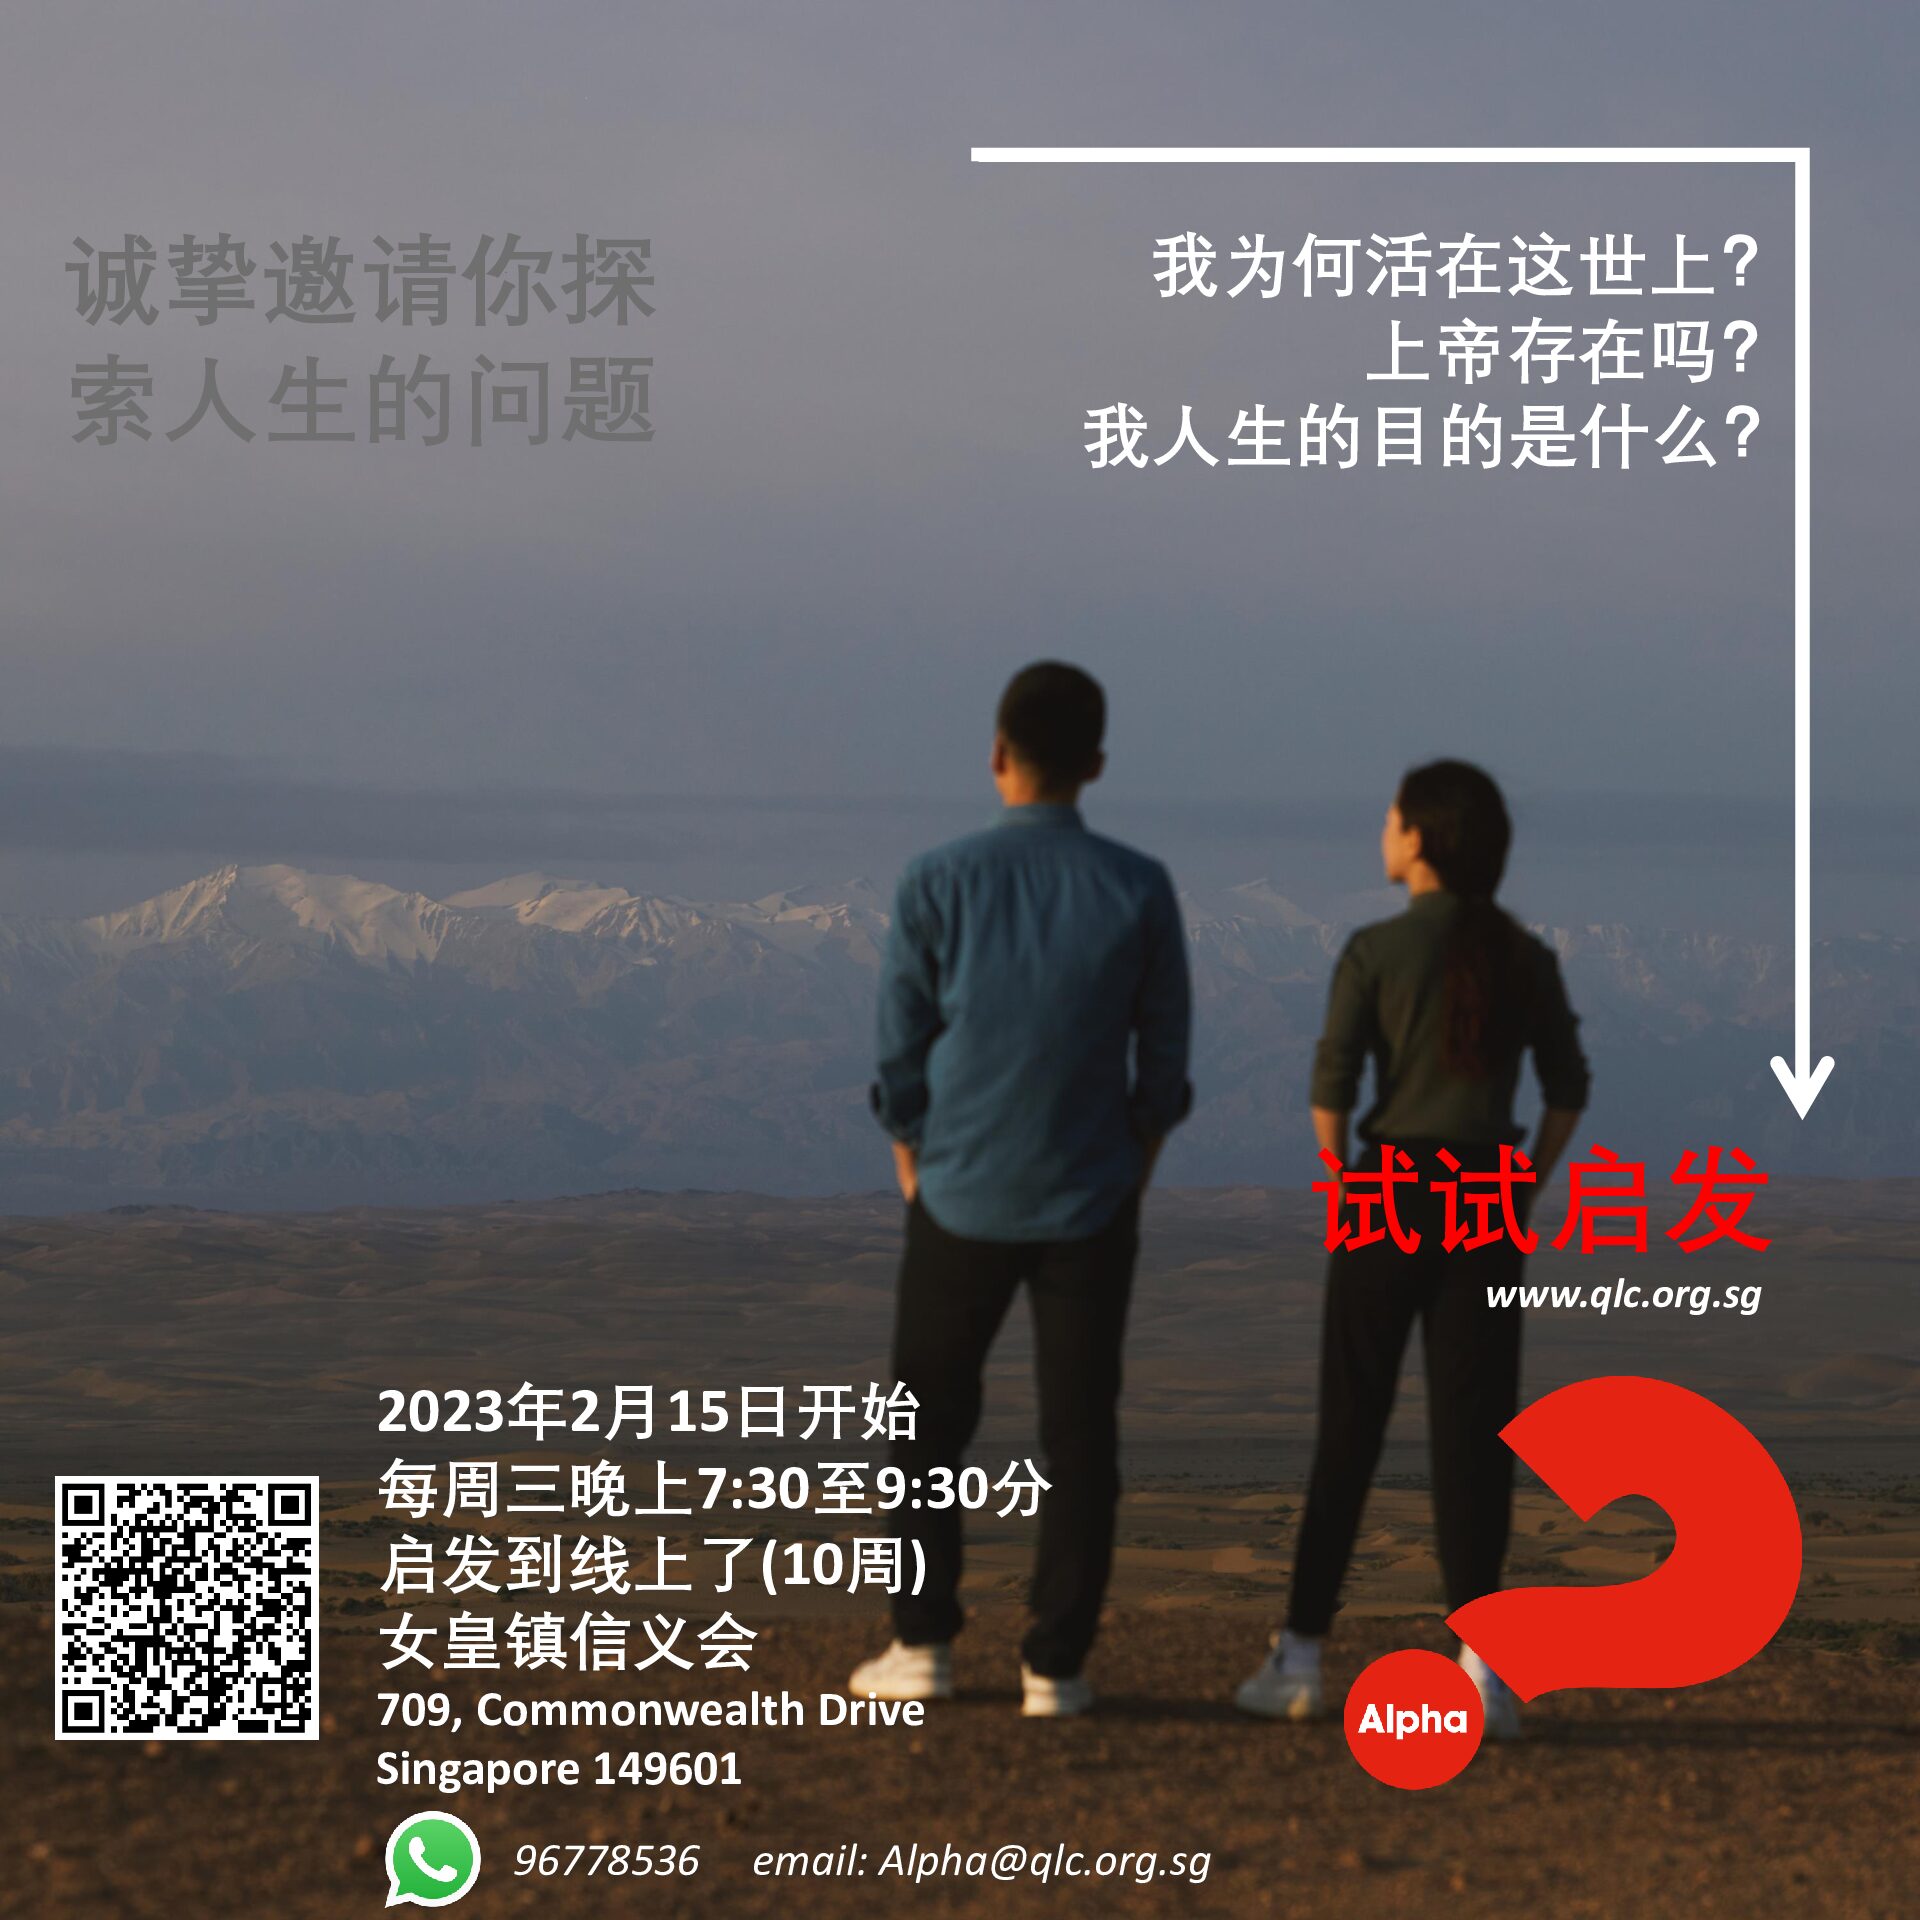 Alpha-Whatsapp-Chinese-Campaign-Feb 2023